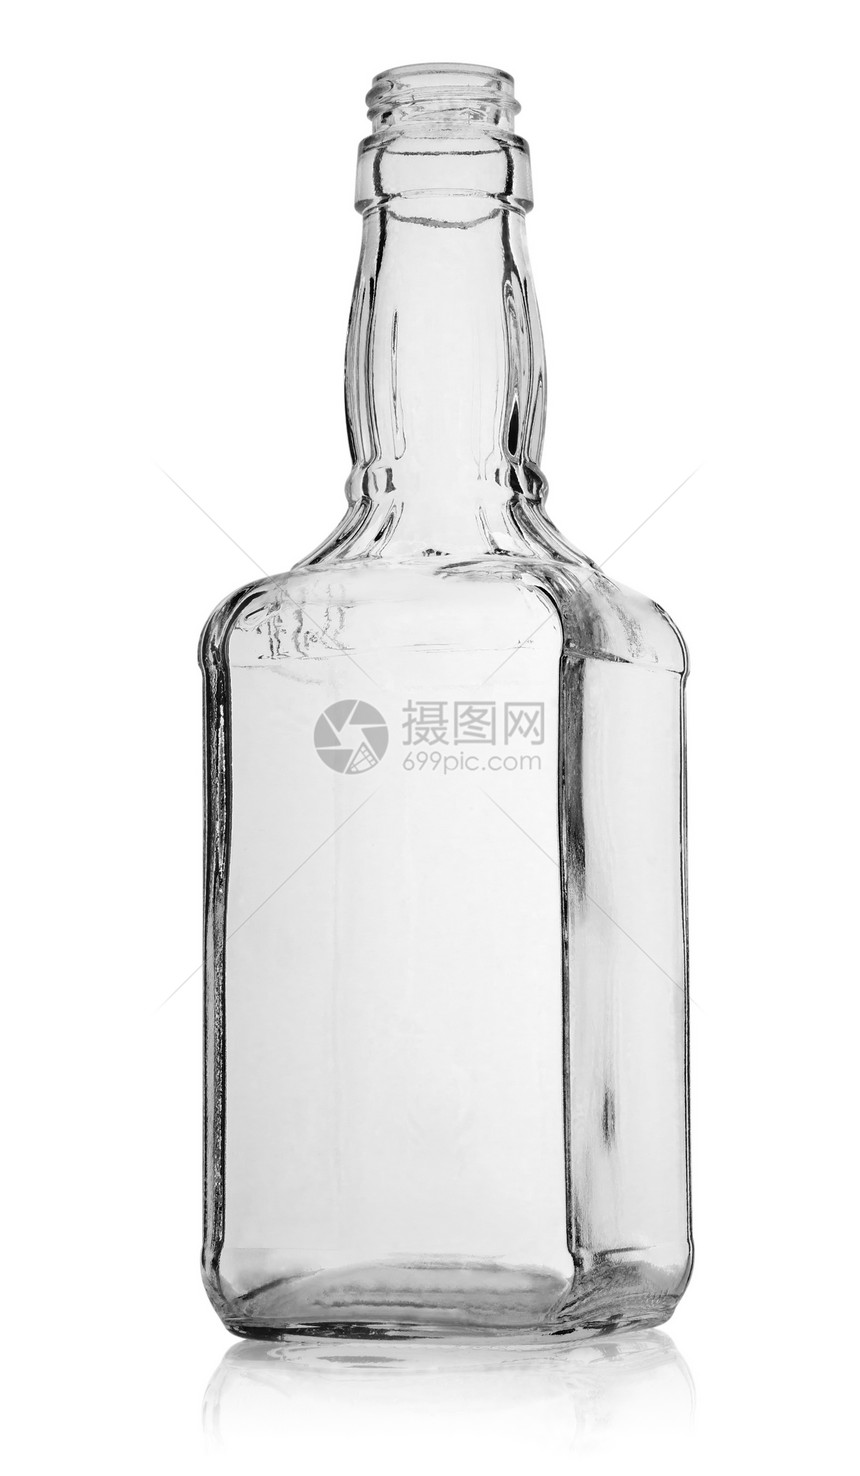 威士忌瓶玻璃液体酒精饮料白色影棚对象宏观图片